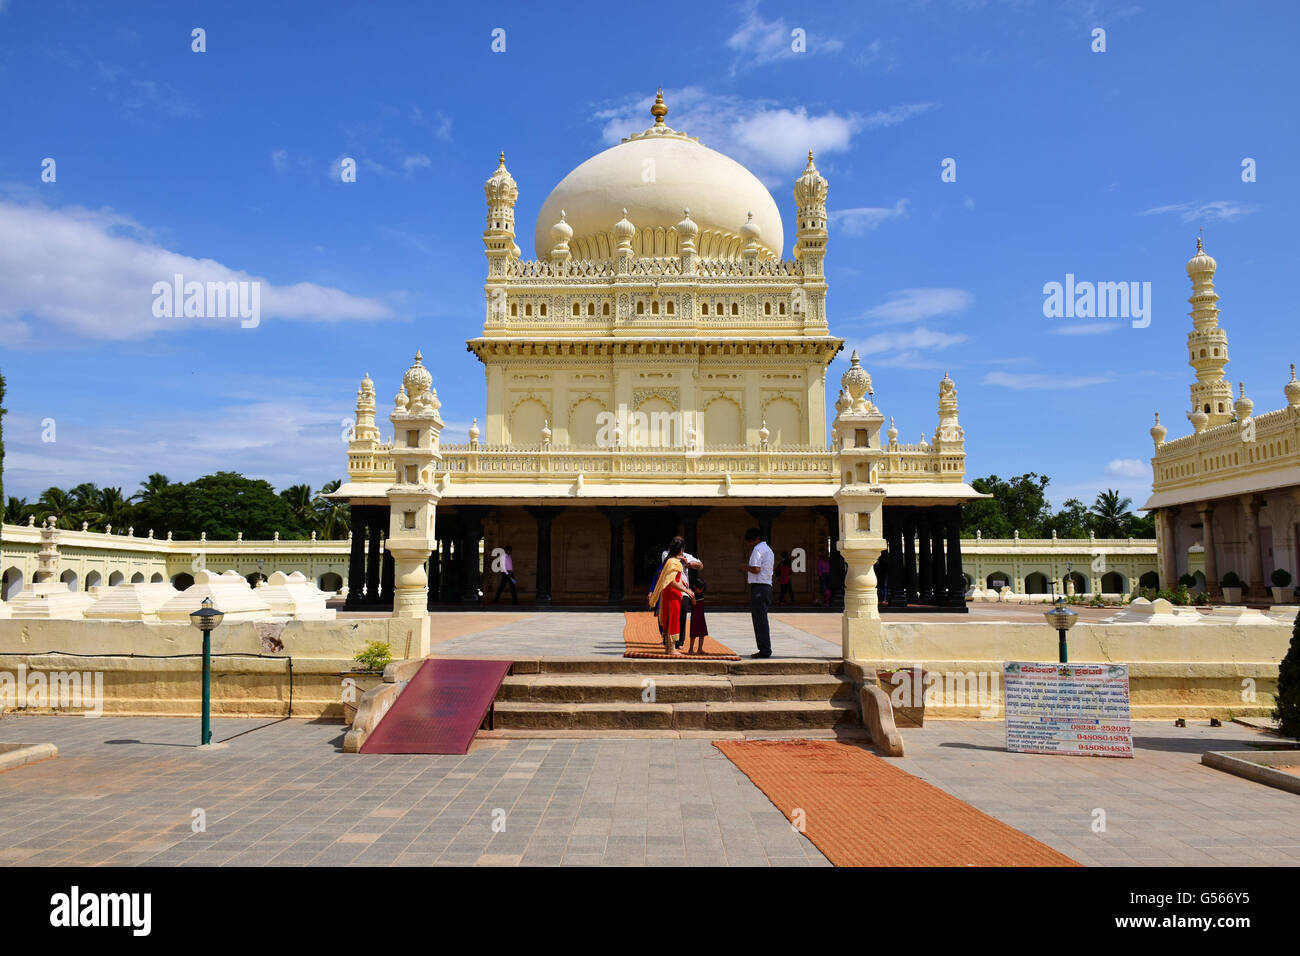 Die Gumbaz bei Srirangapatnam ist ein Mausoleum, das Grab von Tipu Sultan & Hyder Ali halten. Stockfoto